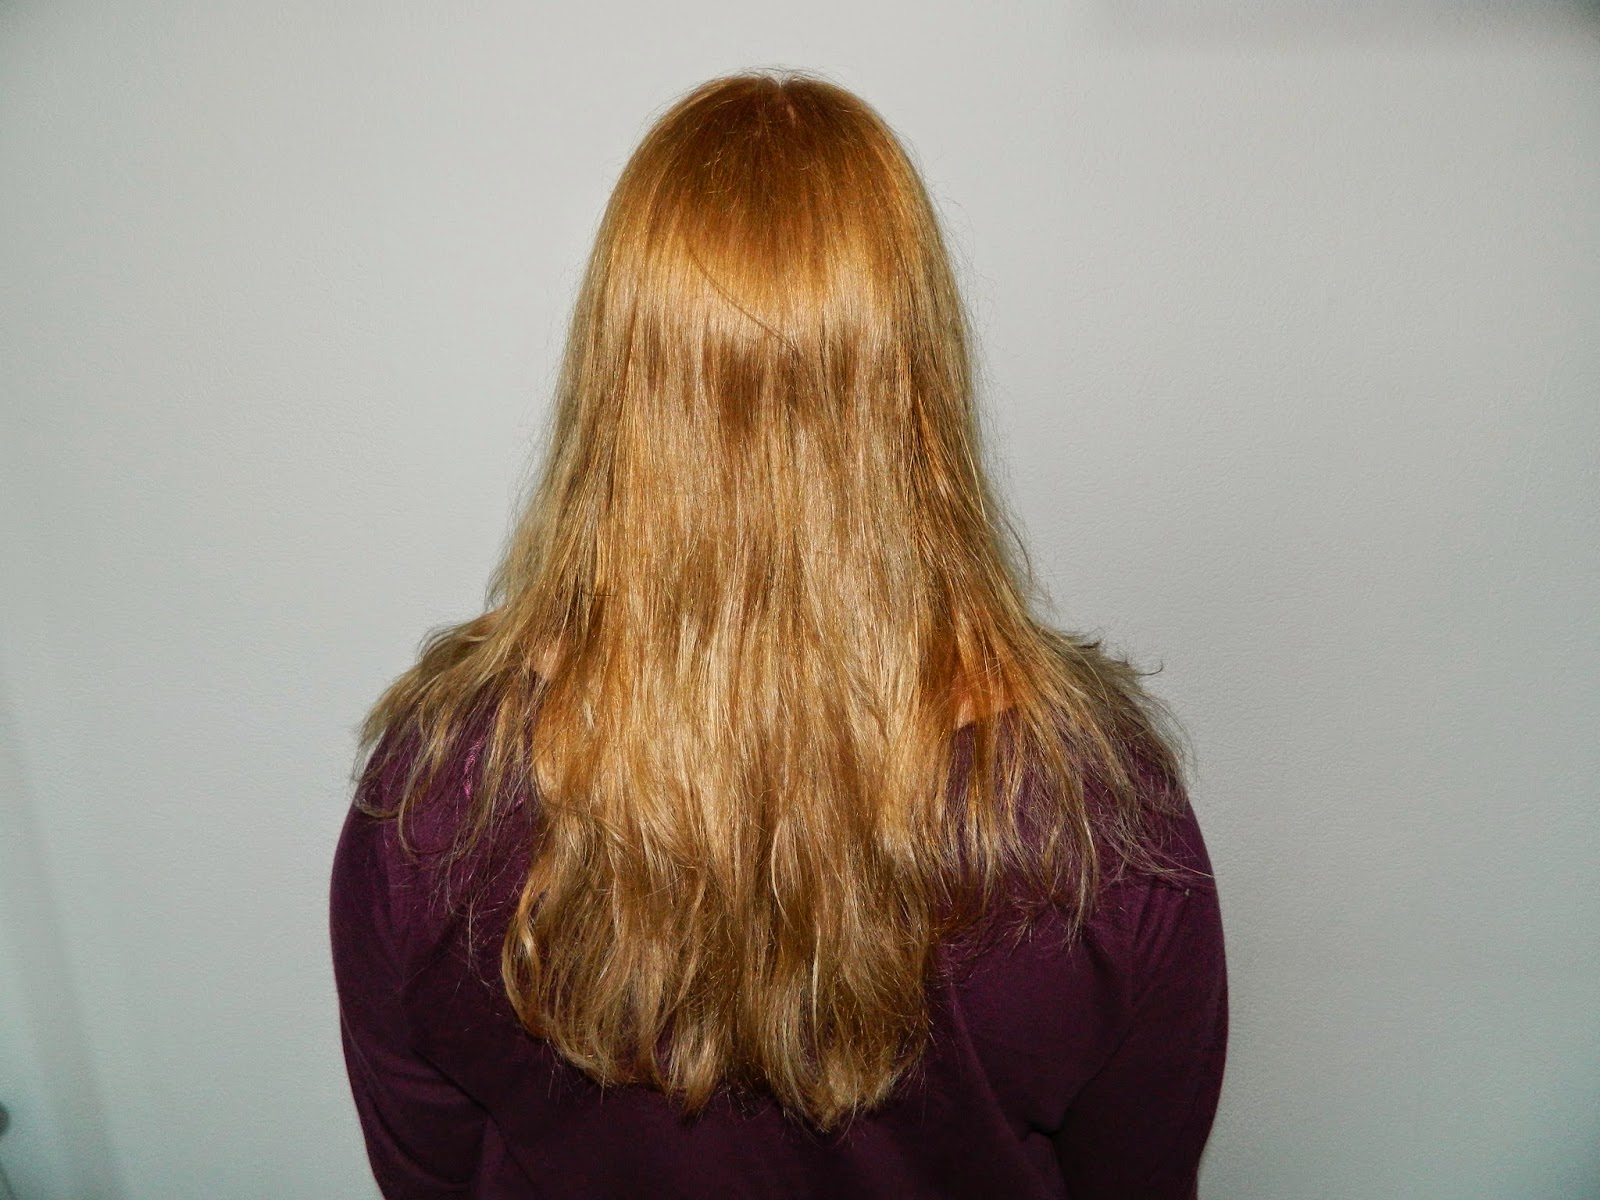 Willen Laatste Vaderlijk Mijn leven in beeld: Kruidvat crème haarkleuring 8.3 goud blond